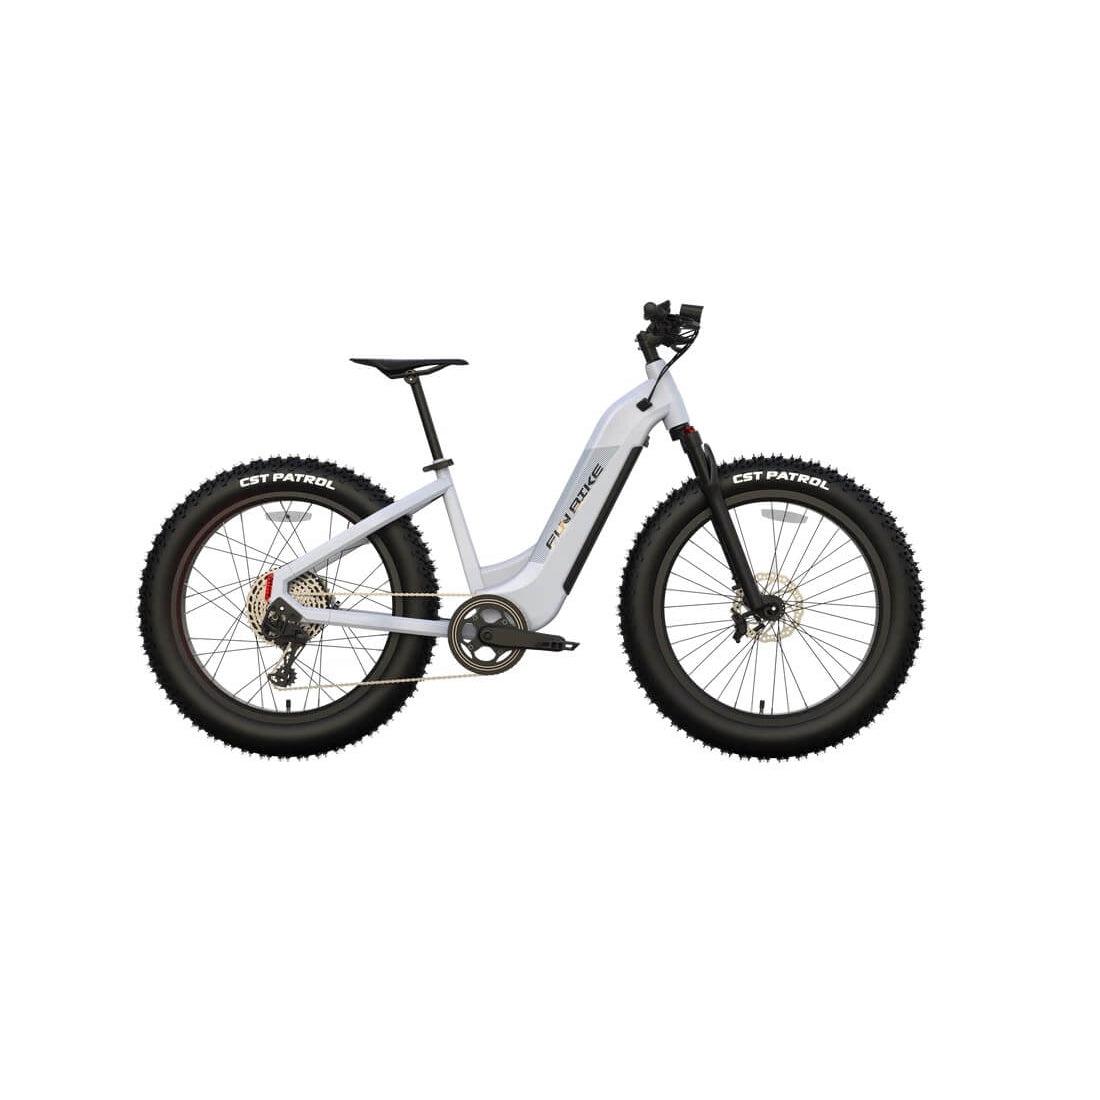 Funbike-Lion-Fun-Fatbike02-Electric-Bike-Fat-Funbike - side  view 